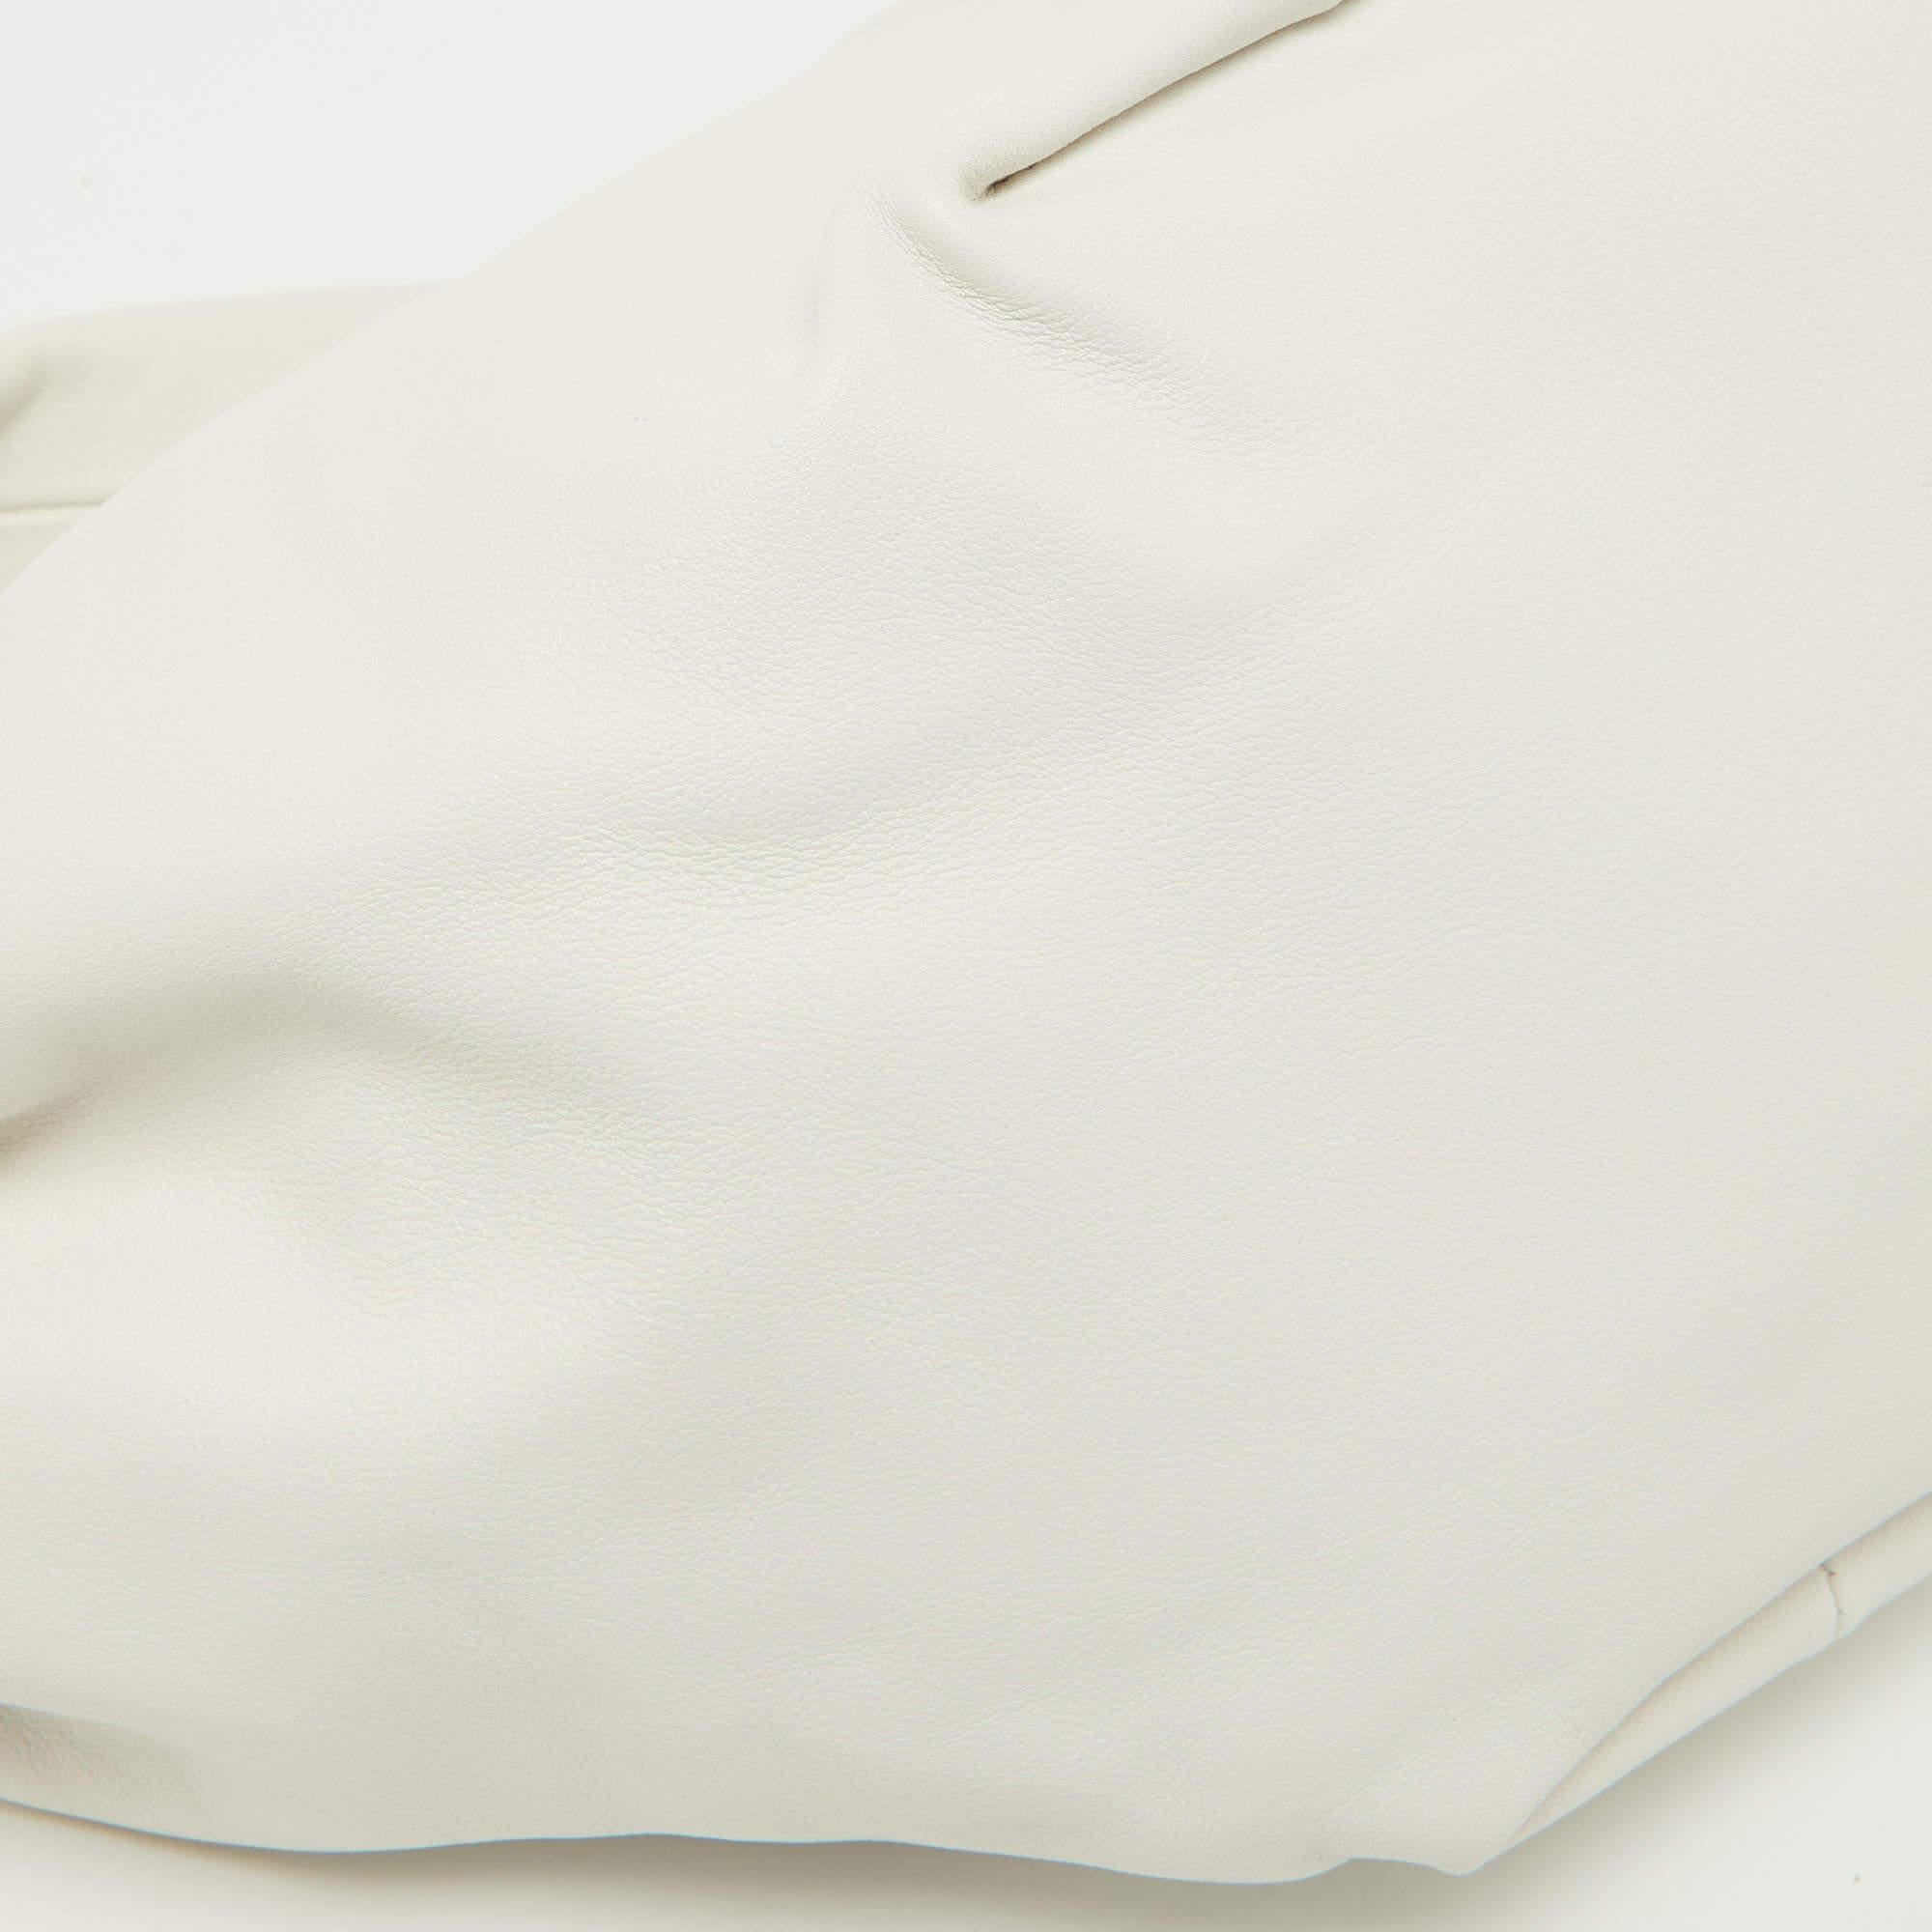 Bottega Veneta White Leather Mini Double Knot Hobo In Excellent Condition For Sale In Dubai, Al Qouz 2